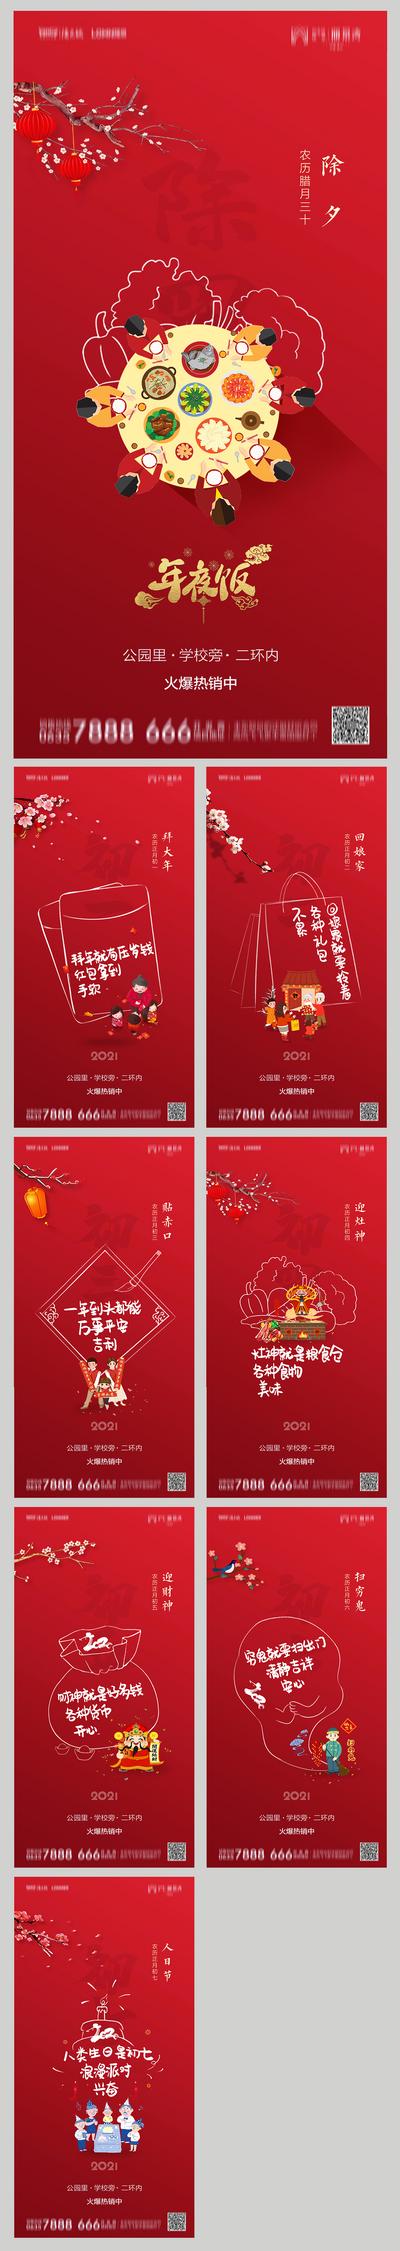 南门网 海报 房地产 中国传统节日 春节 除夕 线稿 年俗 插画